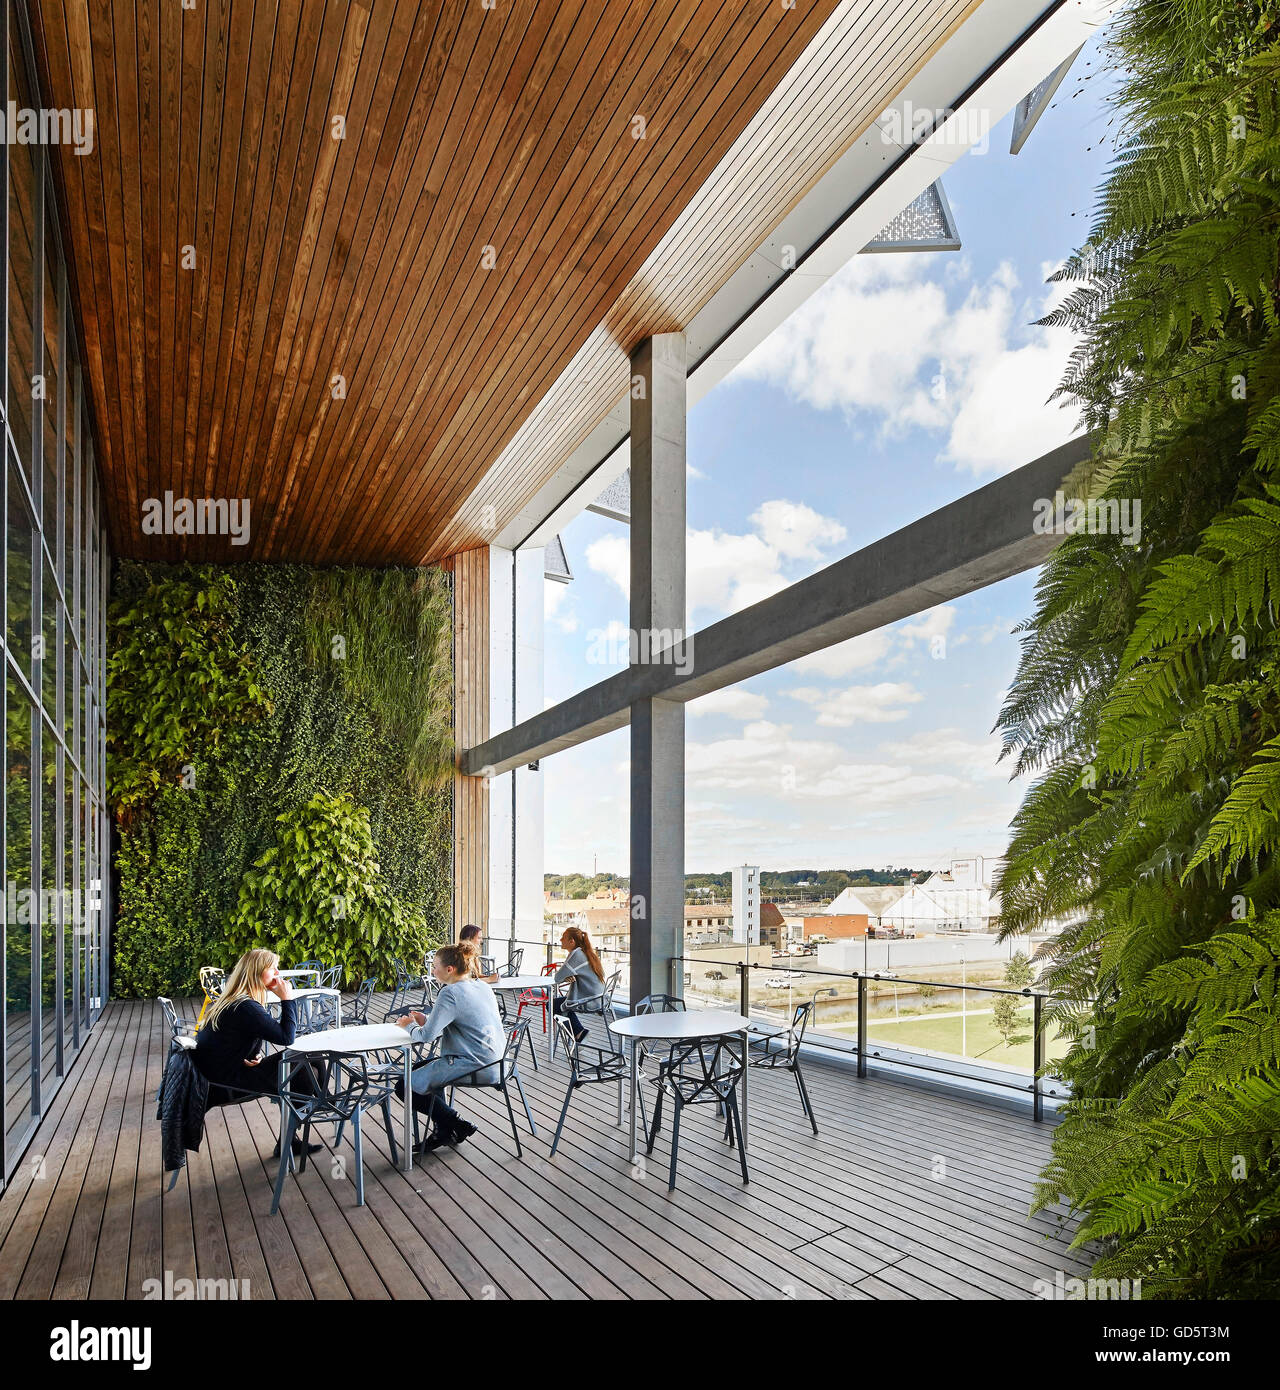 Überdachte und Holz Terrasse mit Sitzgelegenheiten geschmückt. SDU Campus Kolding, Kolding, Dänemark. Architekt: Henning Larsen Architects, 2015. Stockfoto